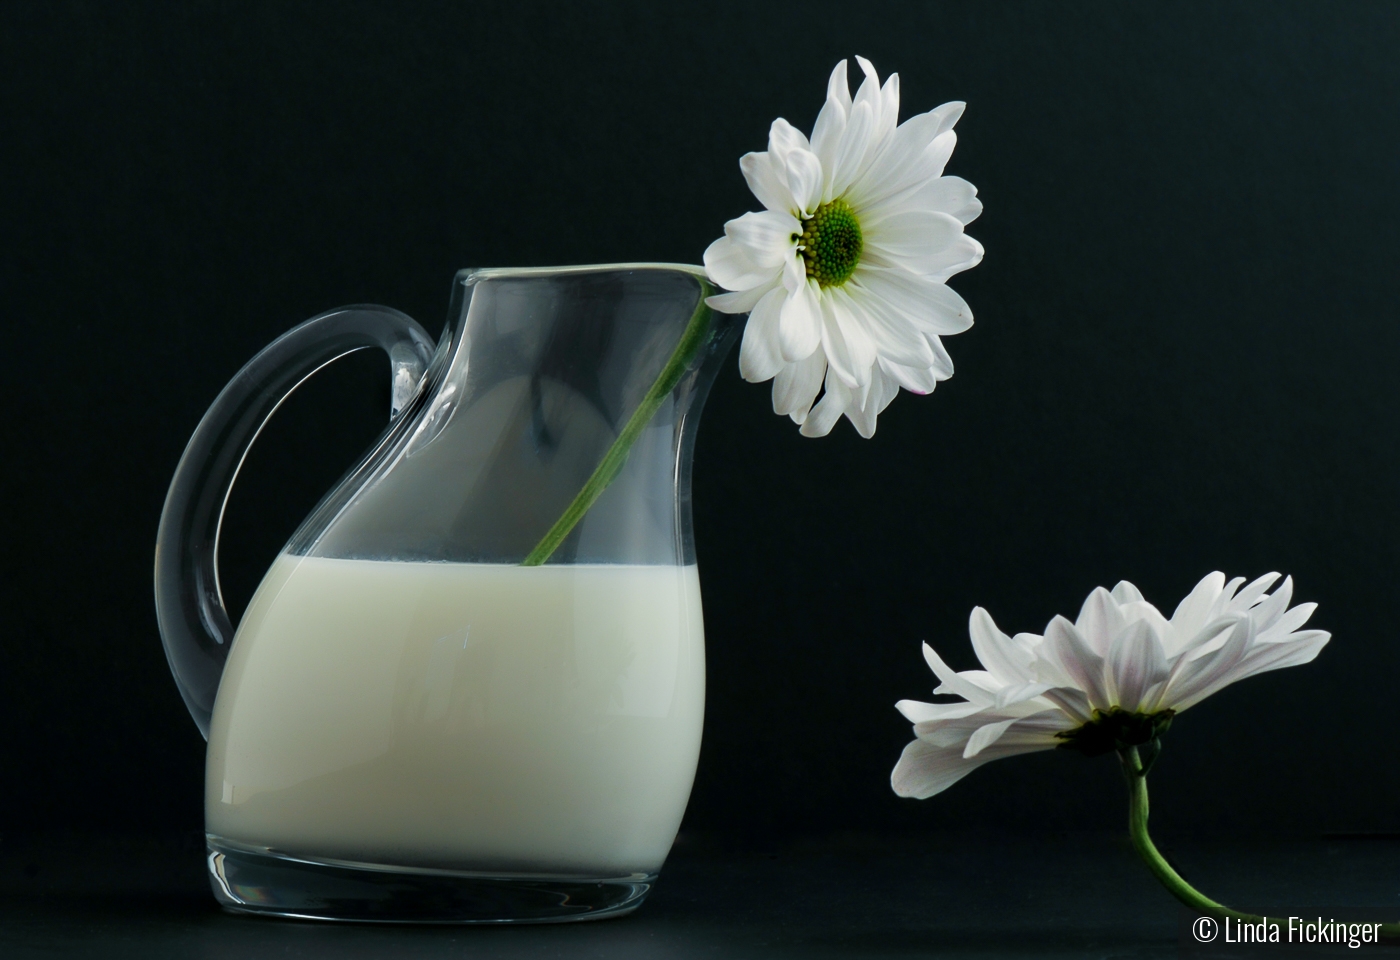 Got Milk? by Linda Fickinger